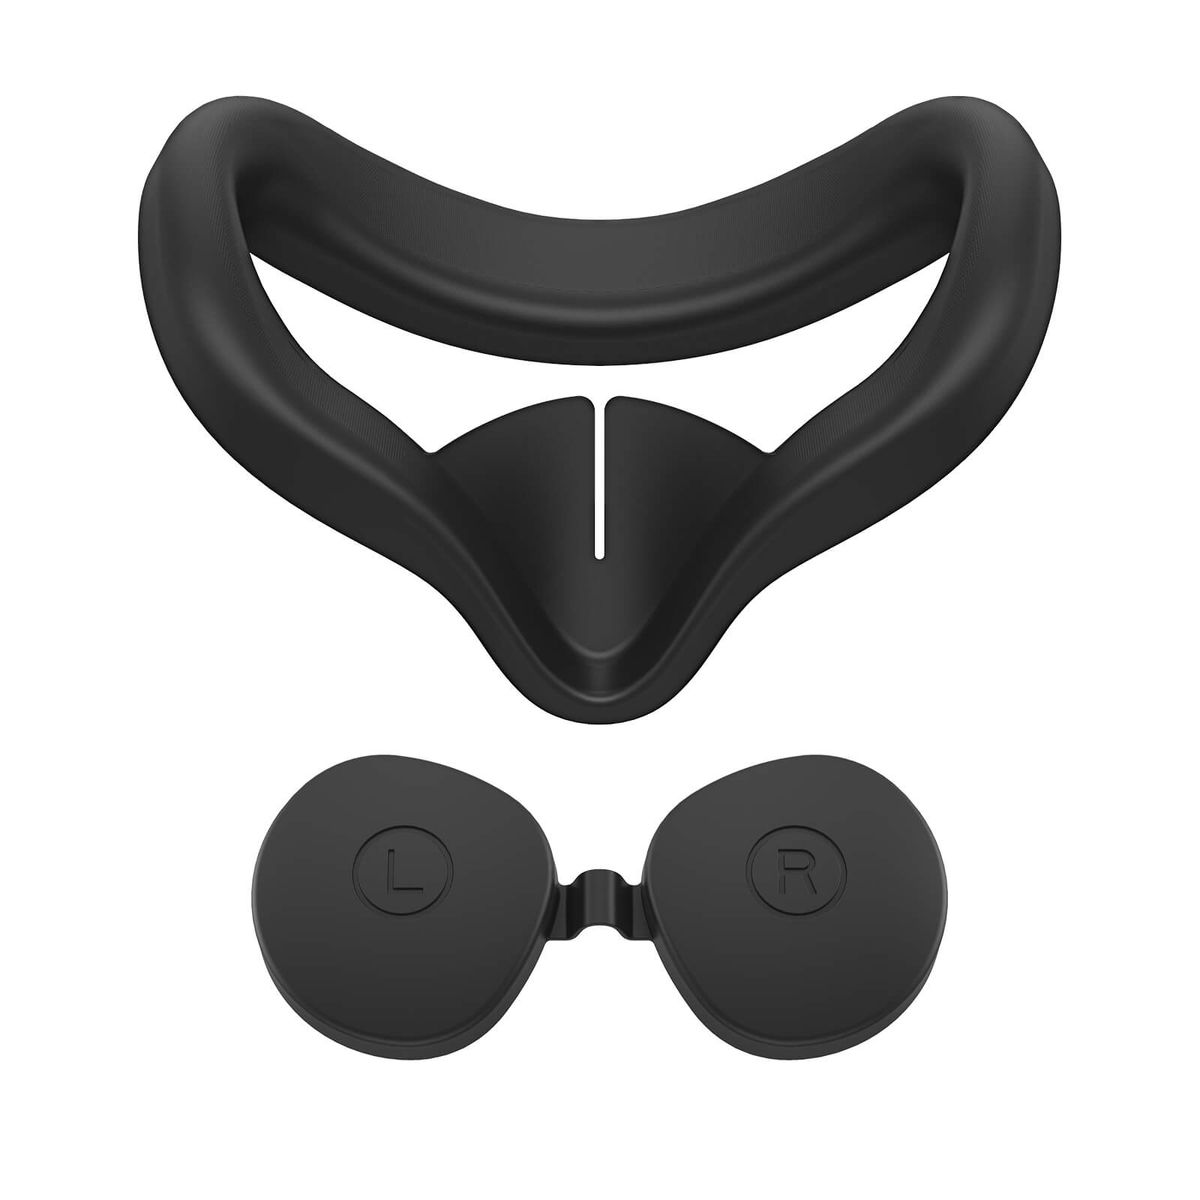 Силиконовая маска для Oculus Quest 2 от KIWI design